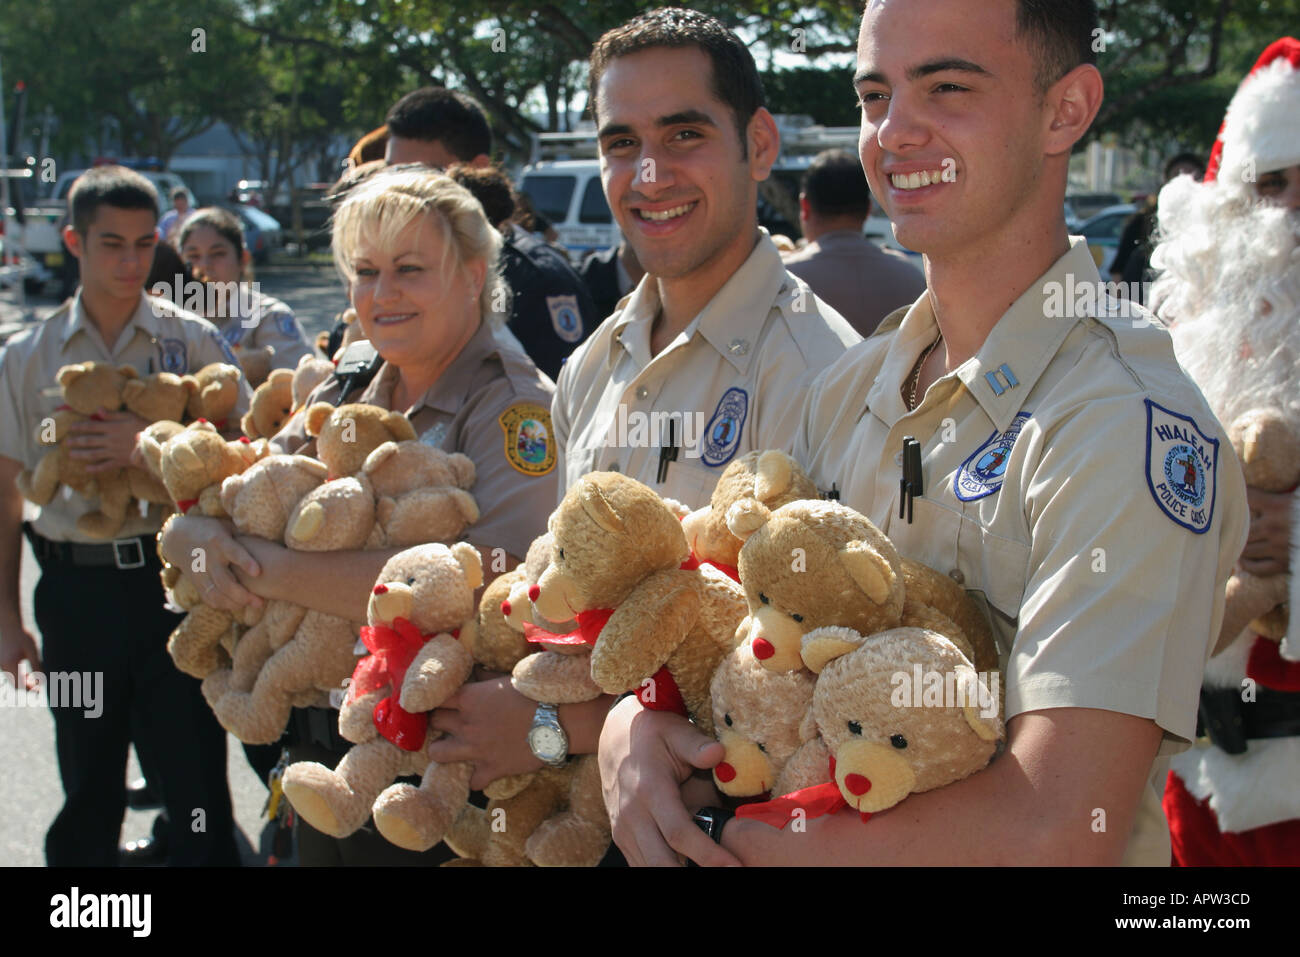 Miami Florida, festa annuale delle foche pasquali, cadetti di beneficenza dell'Ordine fraterno della polizia, orsi regalo, FL121404113 Foto Stock